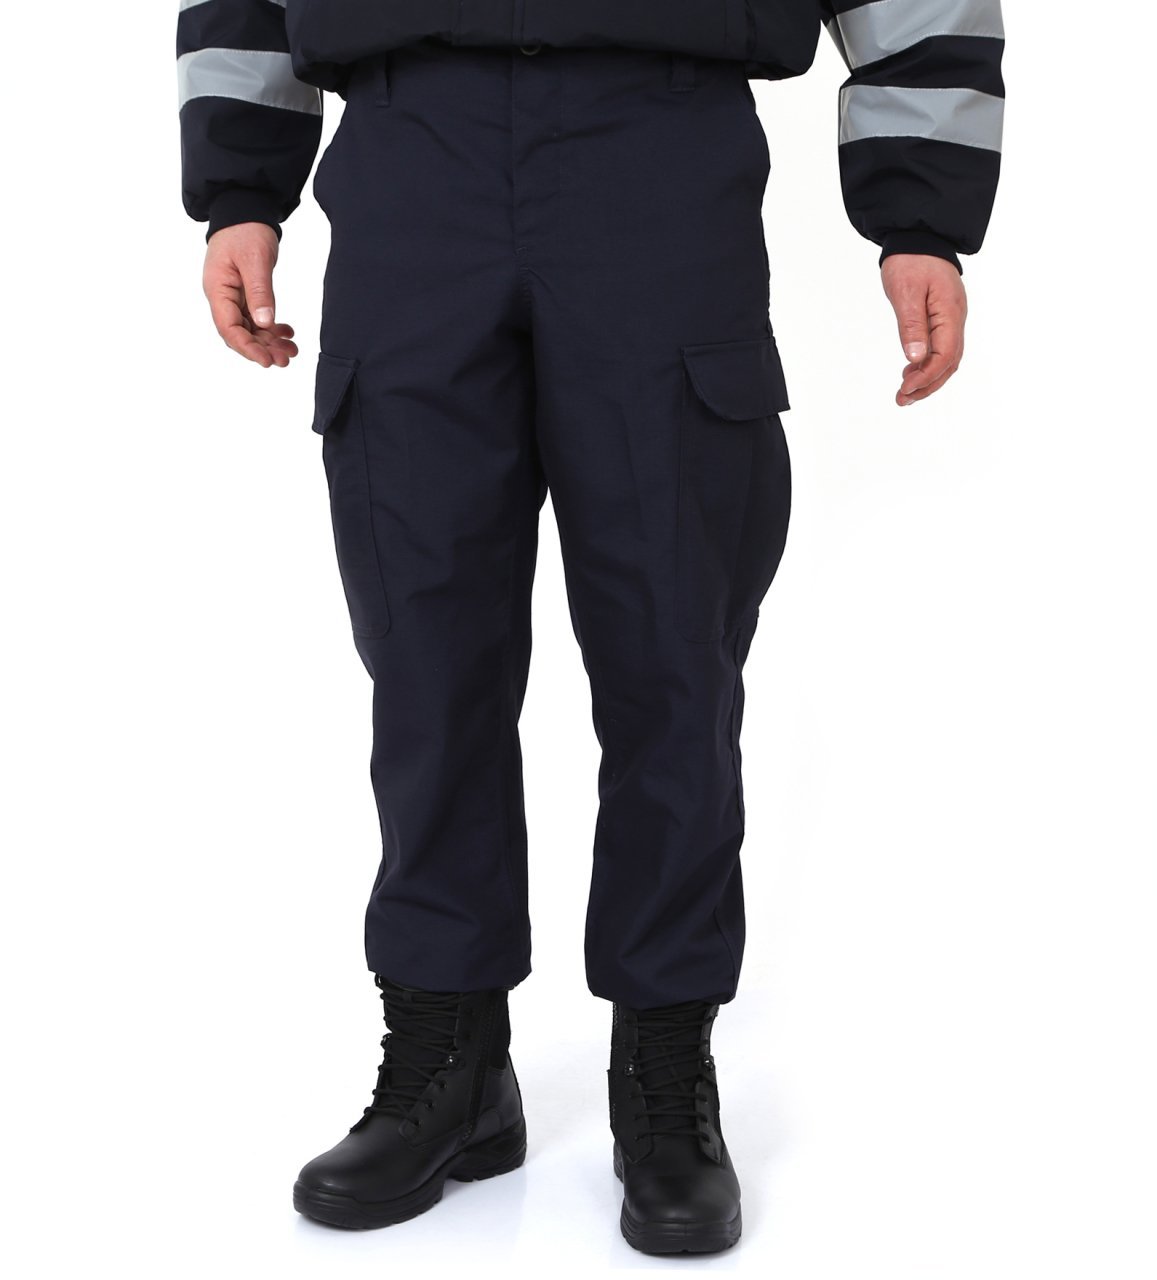 Jandarma Asayiş Yeni Tip Orjinal Kumaş Rengi Pantolon